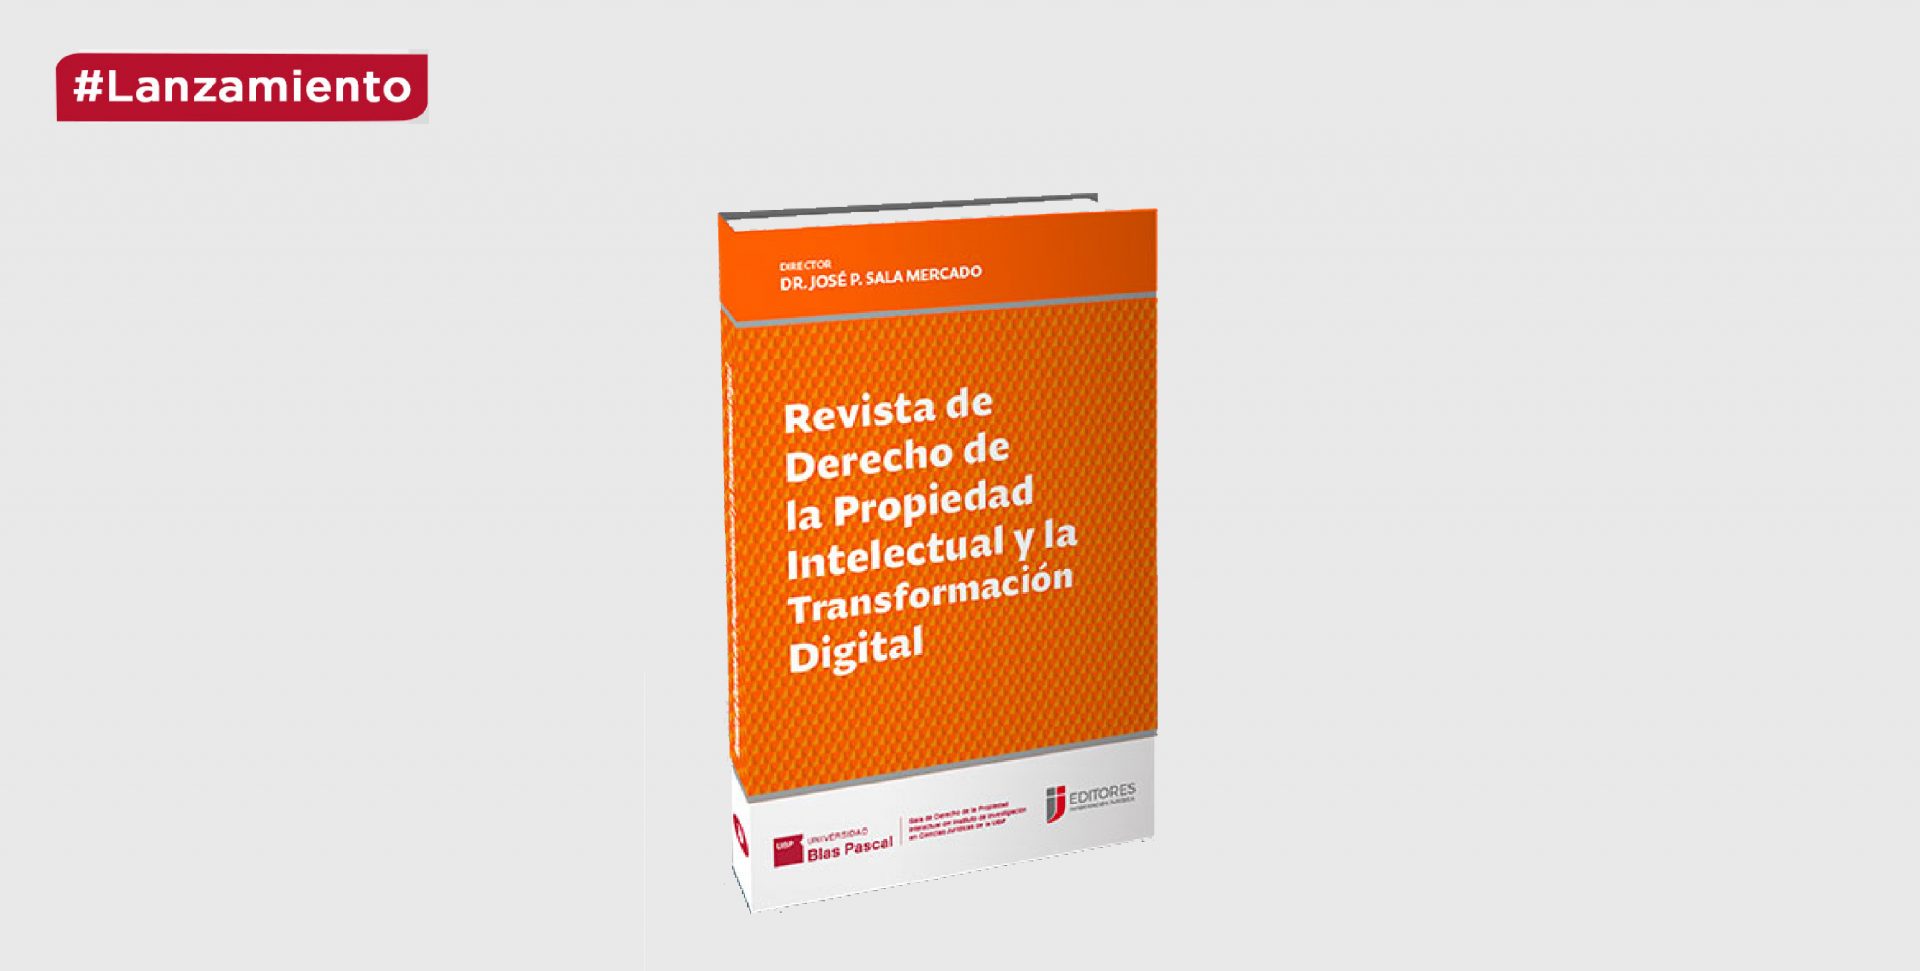 Lanzamiento:  “Revista de Derecho de la Propiedad Intelectual y la Transformación Digital”